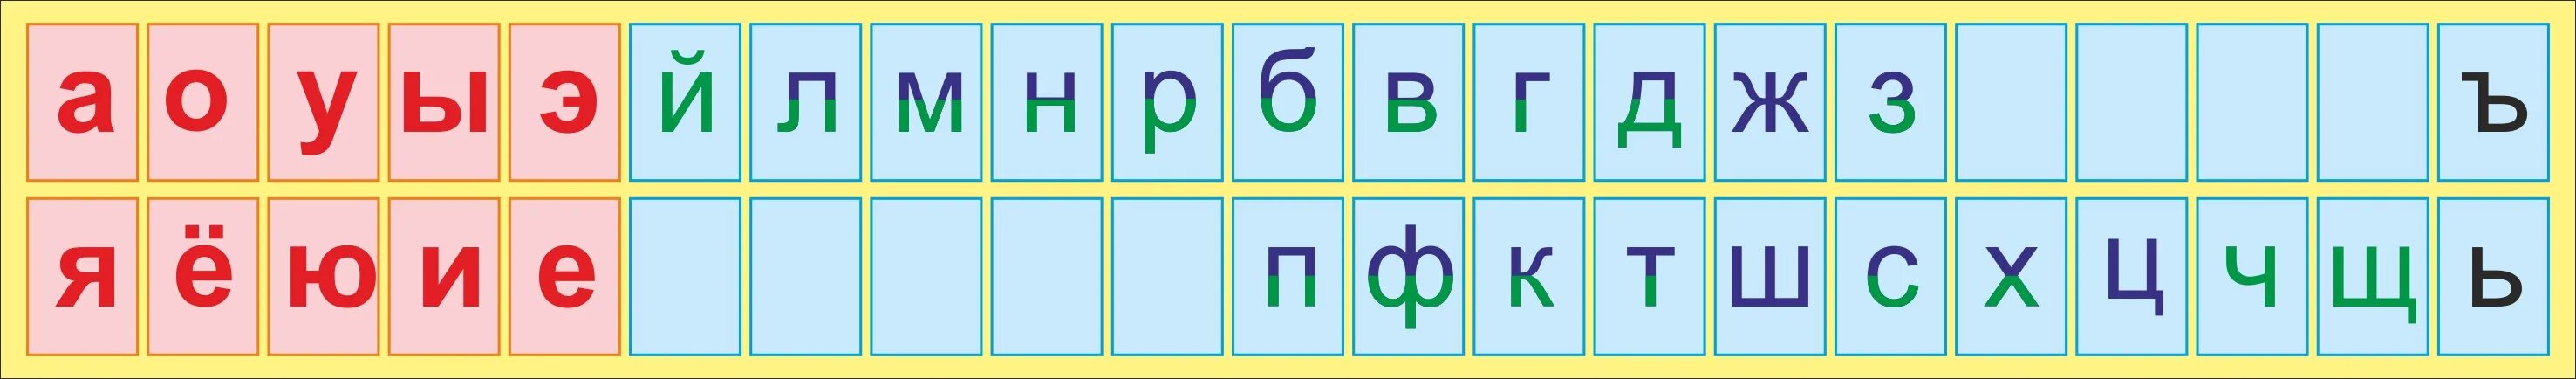 Гласный согласный звук картинка. Алфавит гласные и согласные буквы. Лента букв. Русский алфавит с гласными и согласными буквами. Азбука гласных и согласных букв.